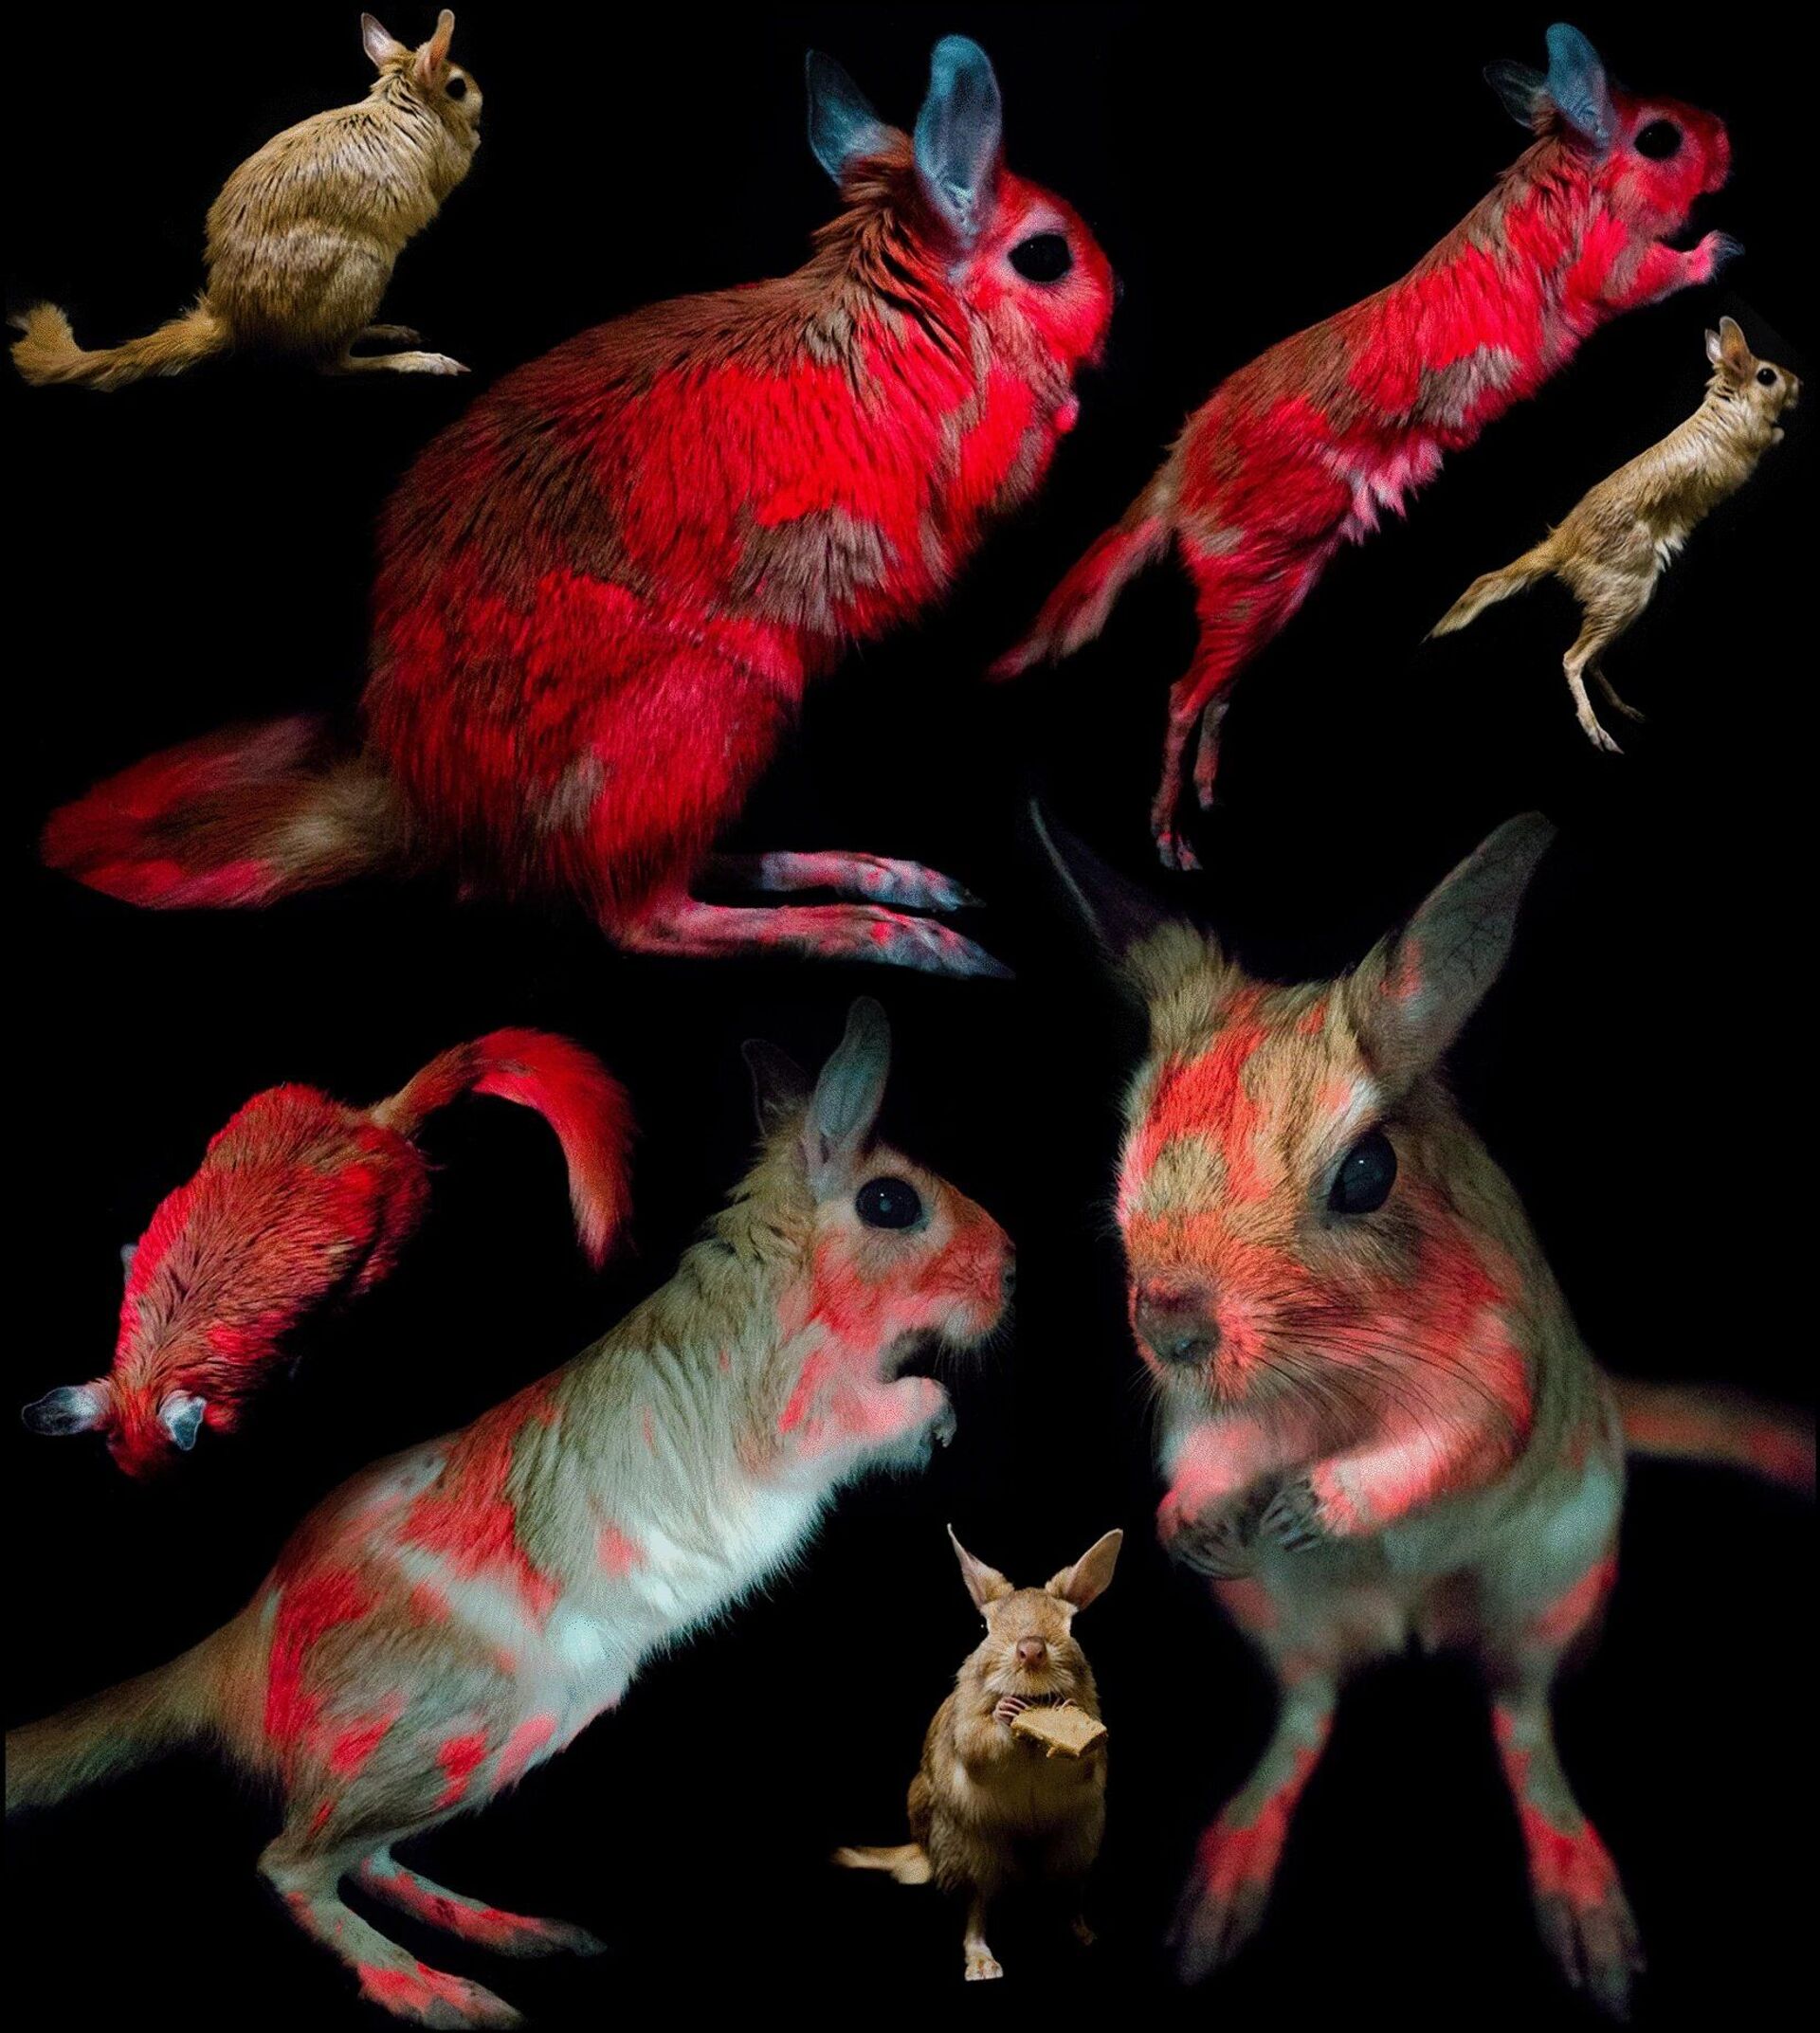 Pelo de ratinho africano fica vermelho sob luz ultravioleta e cientistas não sabem por quê (FOTO) - Sputnik Brasil, 1920, 26.02.2021